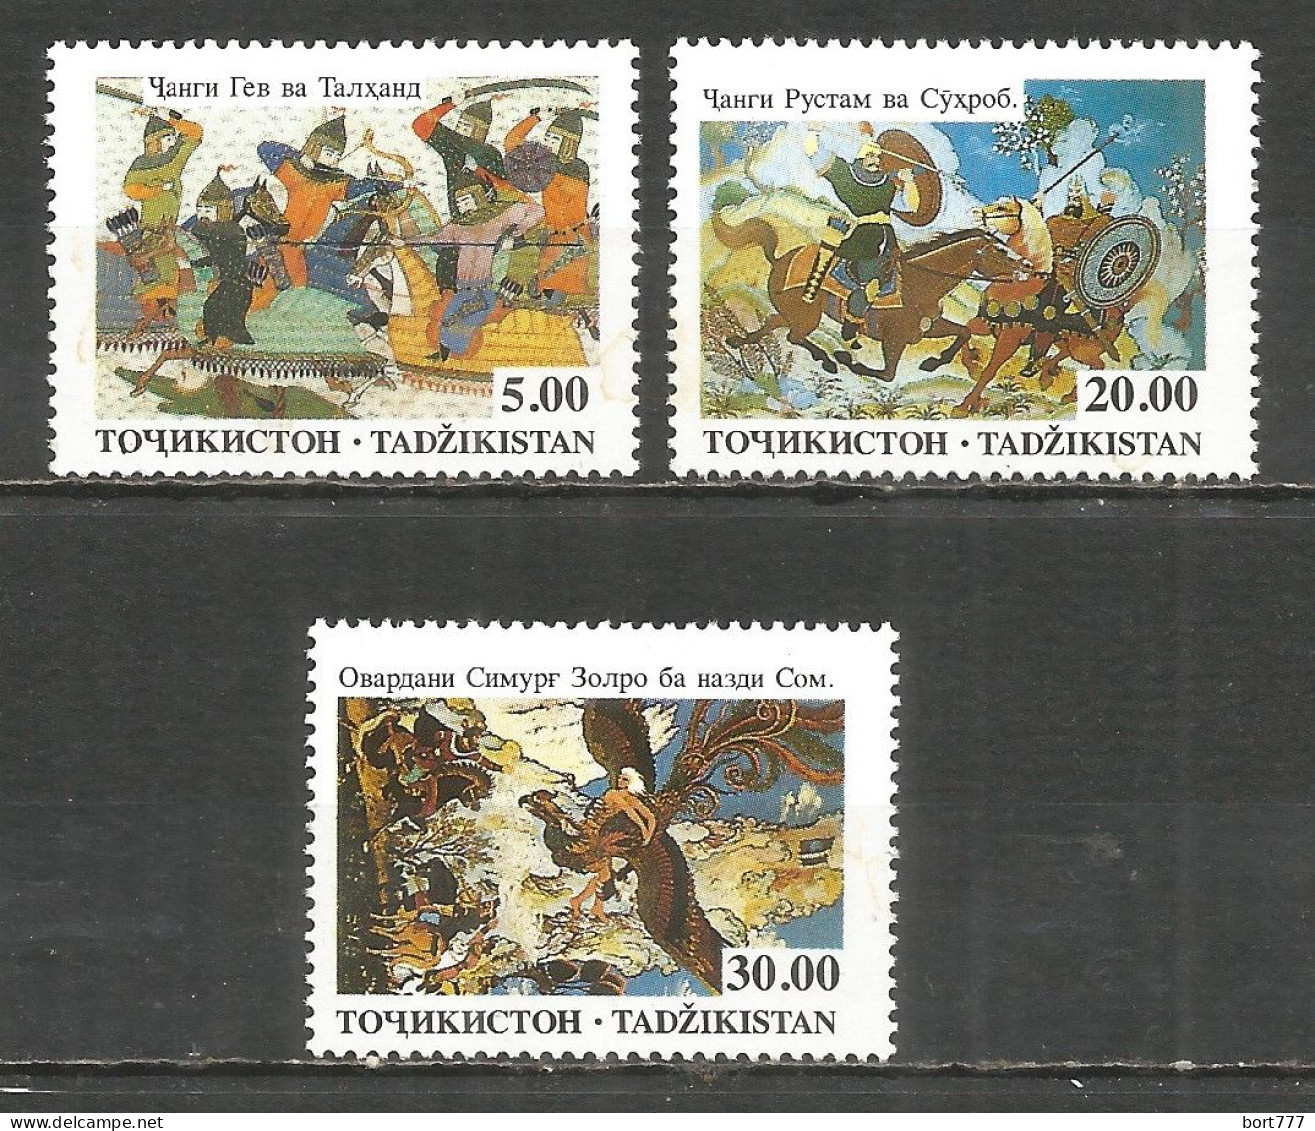 Tajikistan 1993 Year, Mint Stamps MNH (**) Mi. # 27-29 - Tadschikistan